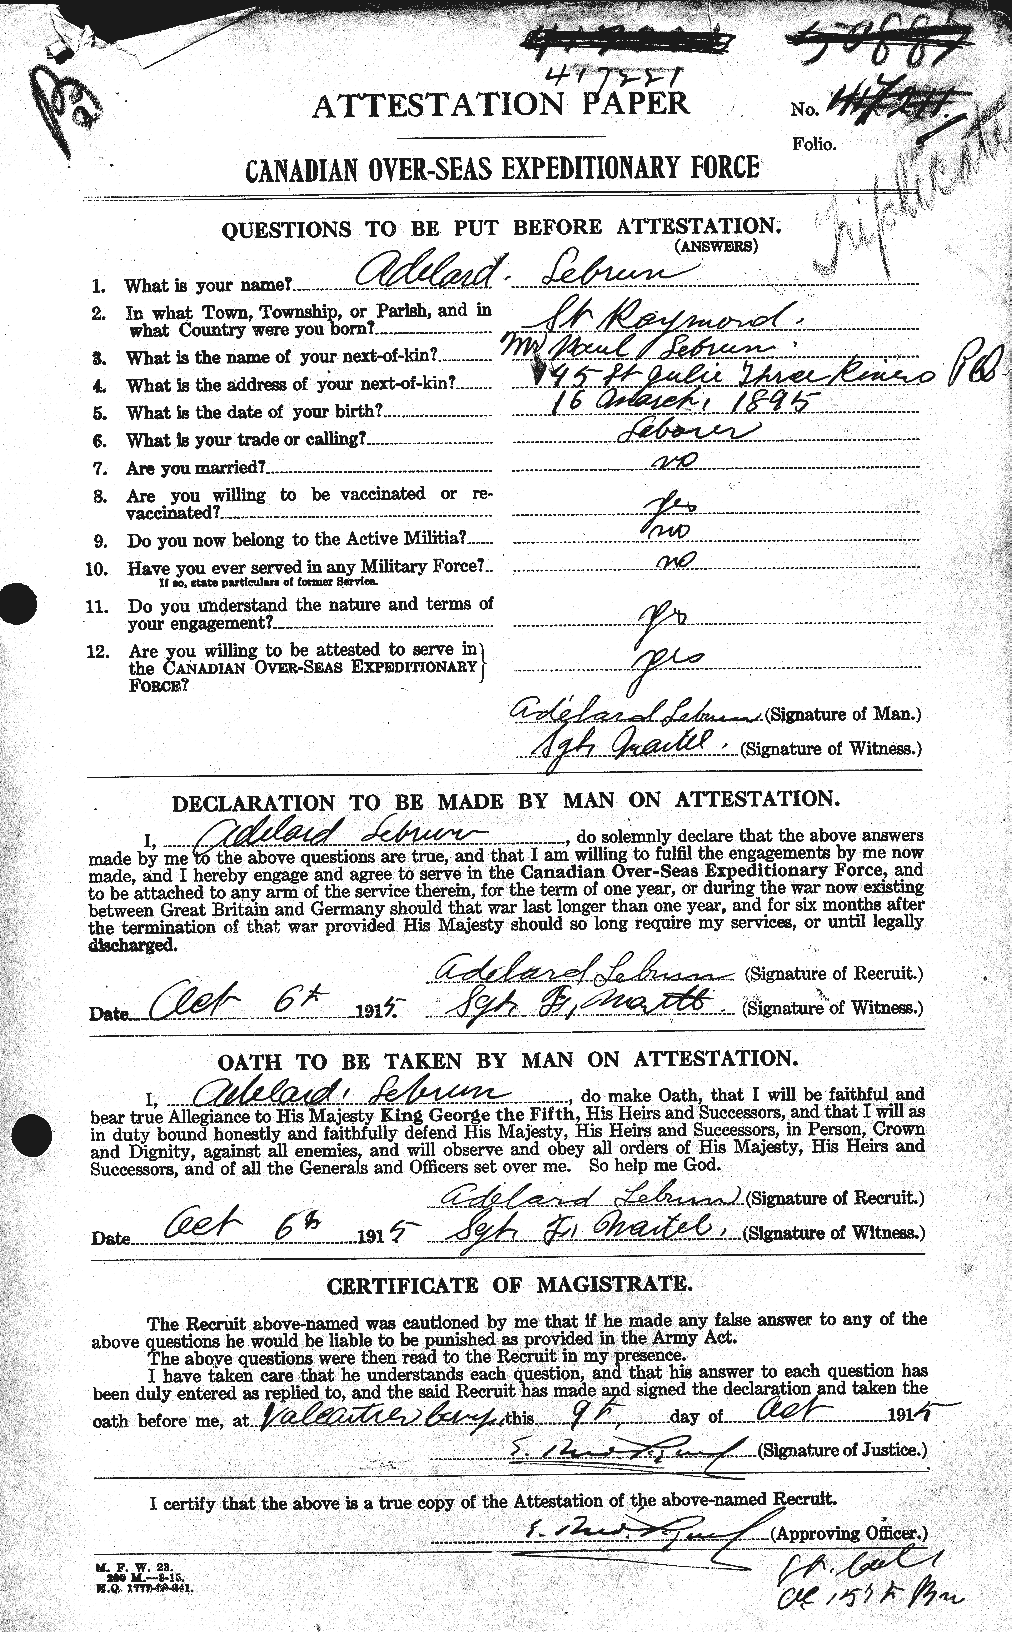 Dossiers du Personnel de la Première Guerre mondiale - CEC 461542a